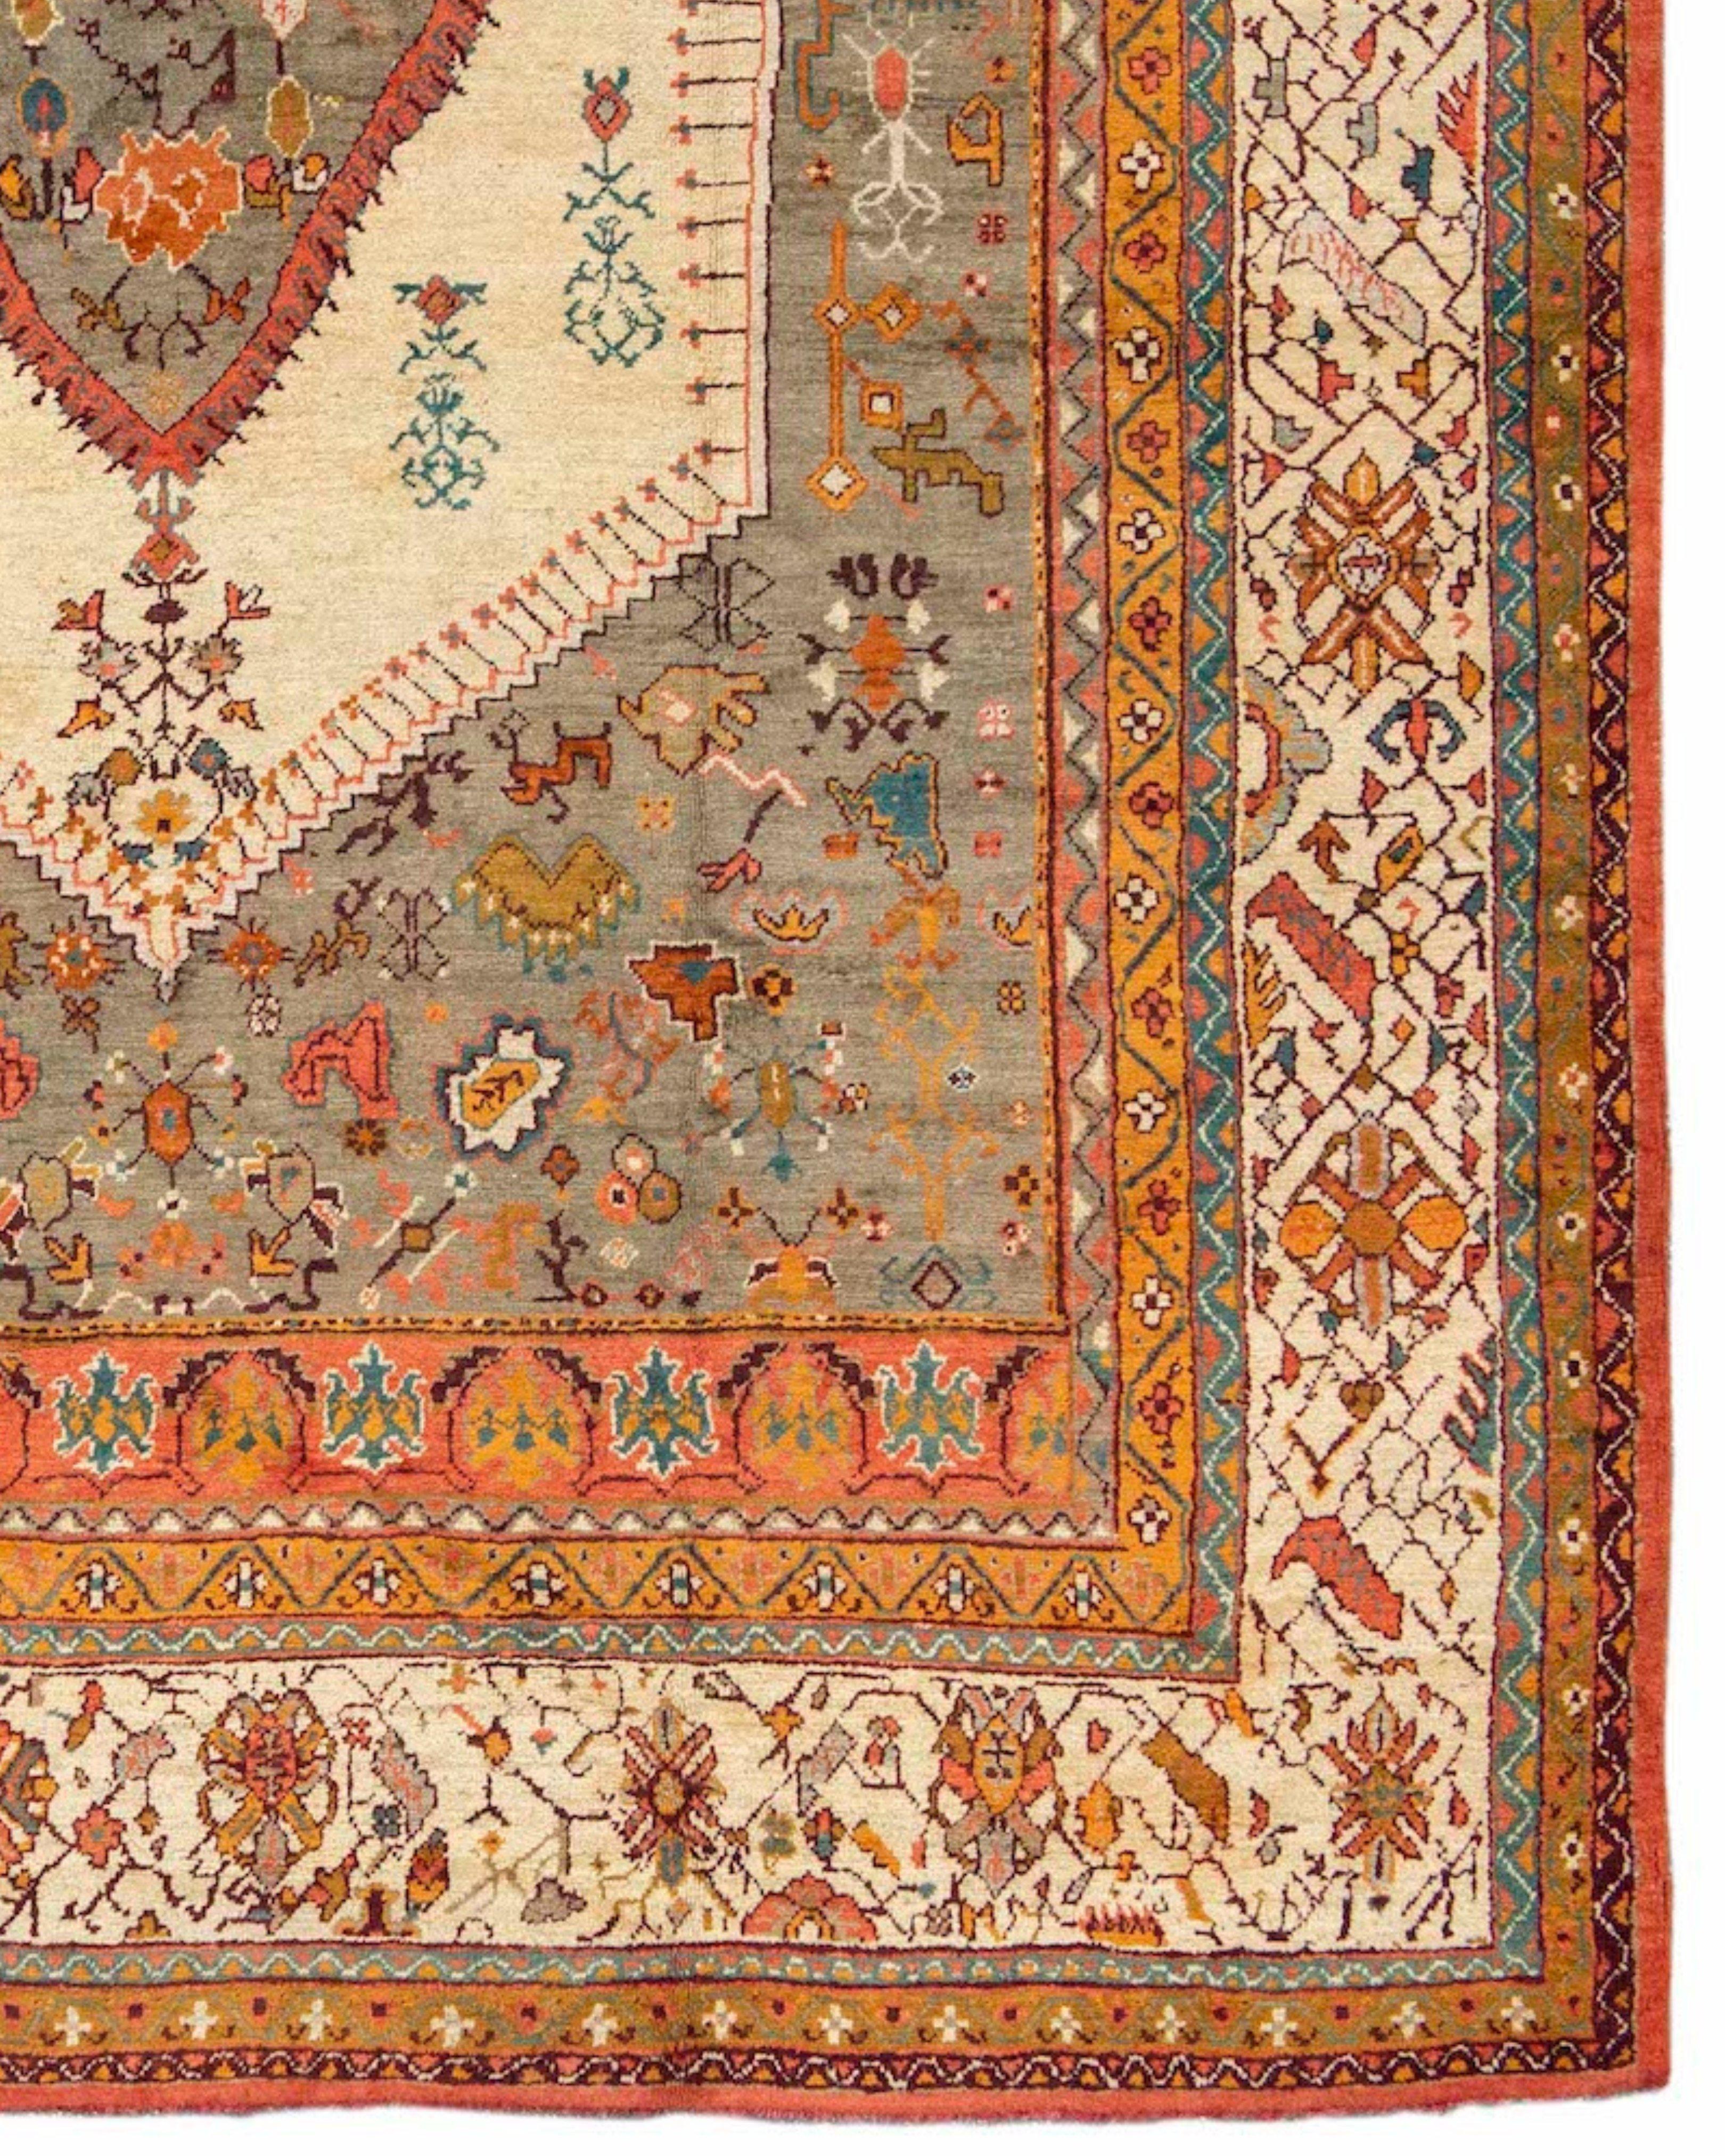 Tapis Anatolien Oushak, 19ème siècle

Cet agréable tapis turc Oushak présente une interprétation rustique d'un format de médaillon classique. La laine douce est complétée par des couleurs douces, avec des crèmes et des beiges dominants et des